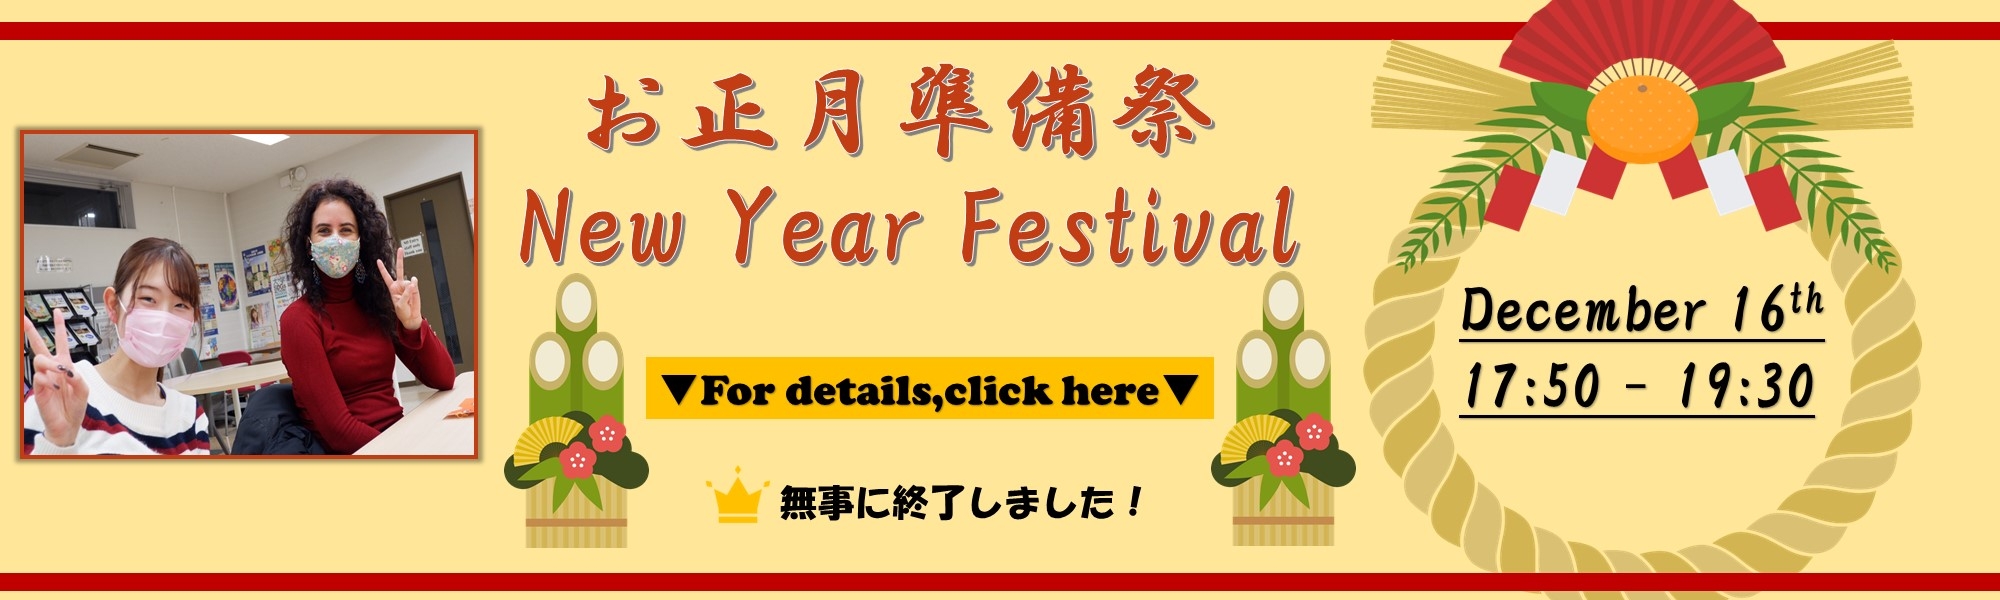 12月16日 お正月準備祭 / New Year Festival